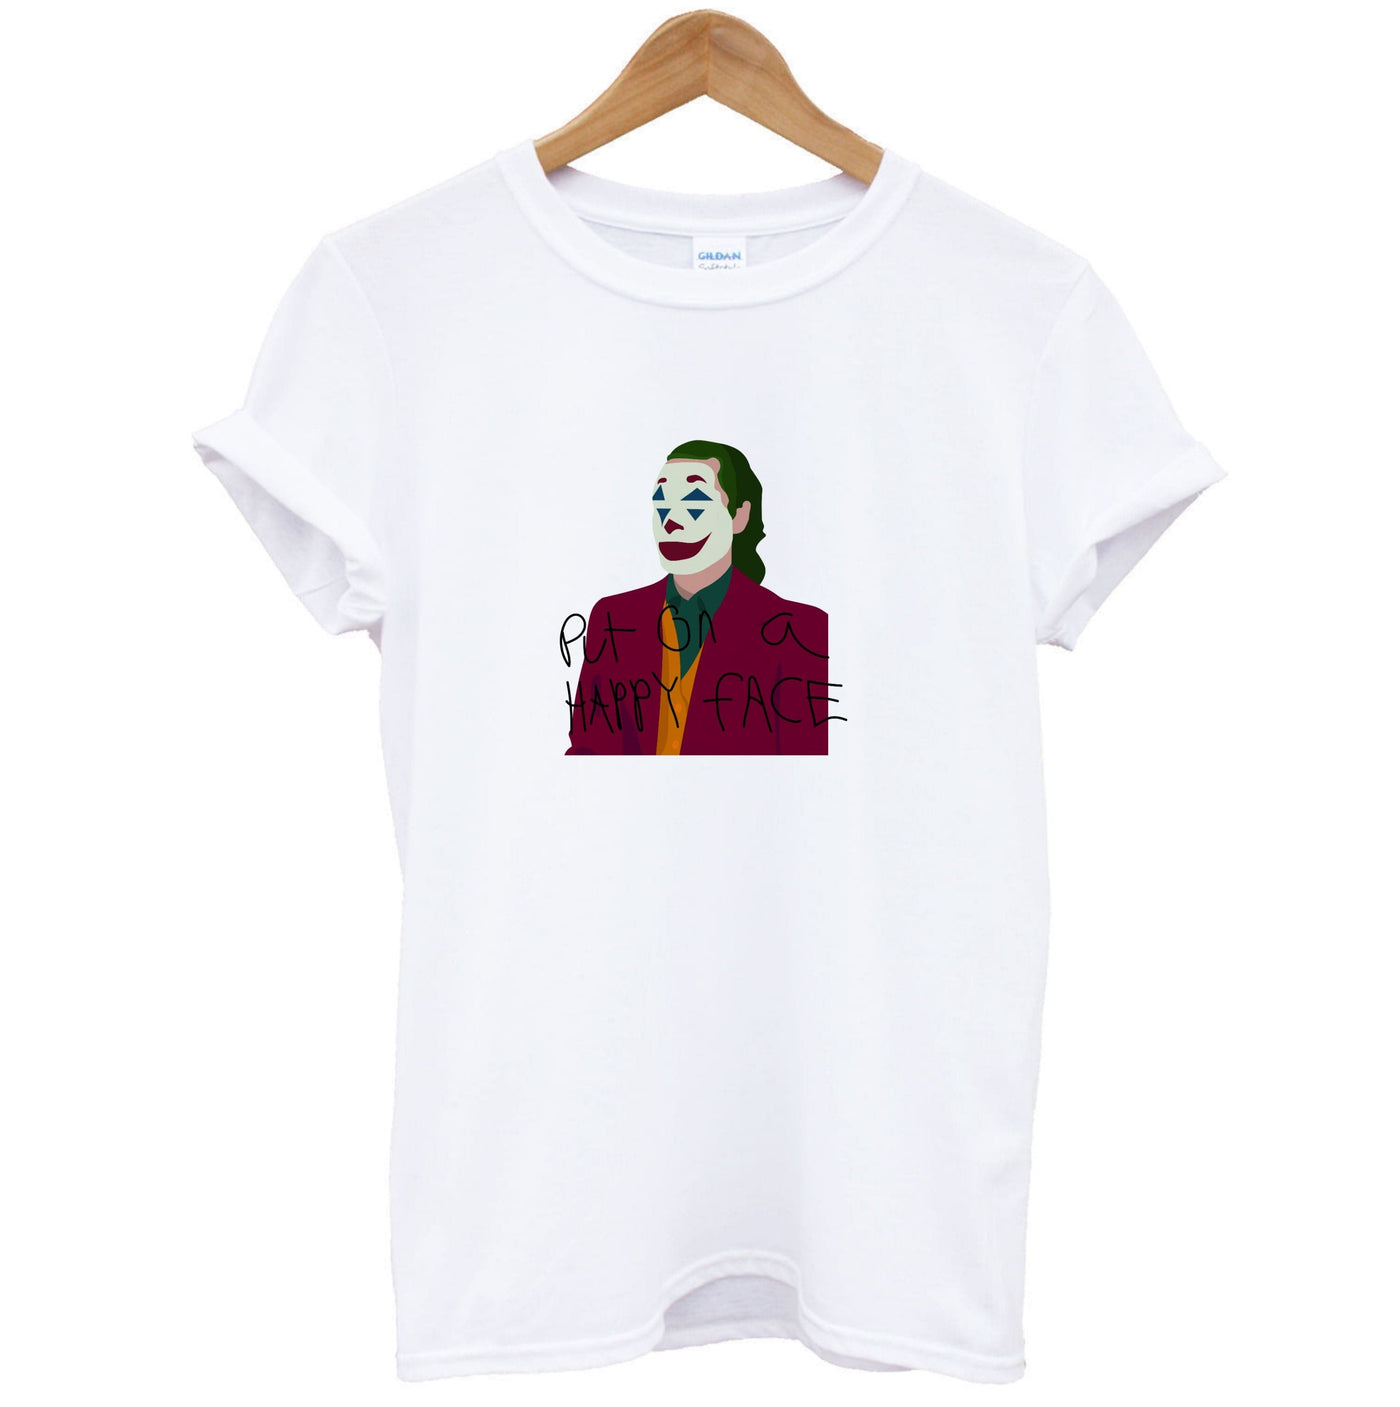 Put on a happy face - Joker T-Shirt